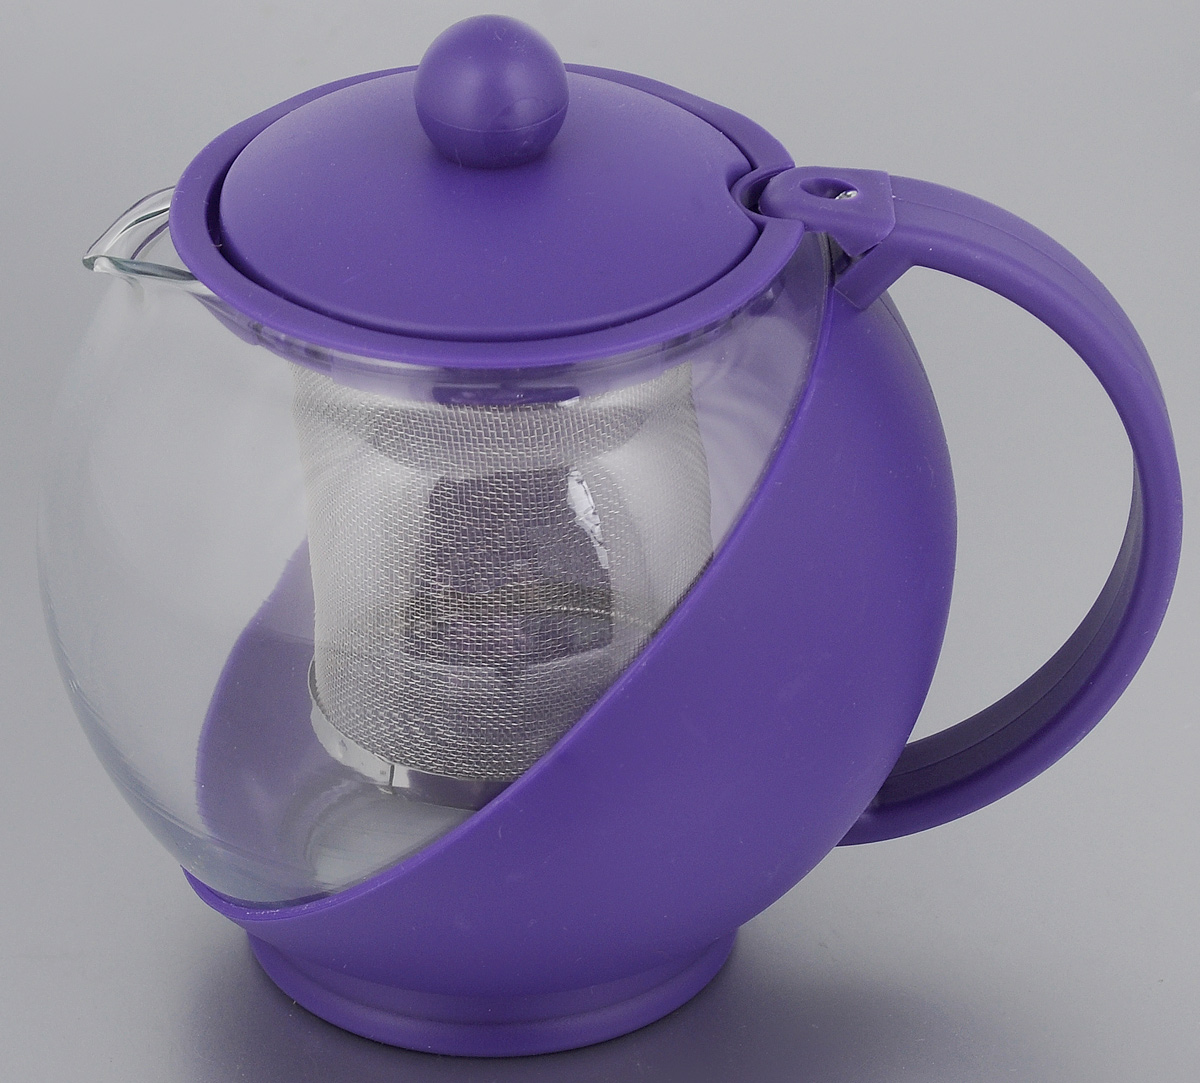 фото Чайник заварочный "Mayer & Boch", с фильтром, цвет: прозрачный, фиолетовый, 750 мл. 25738